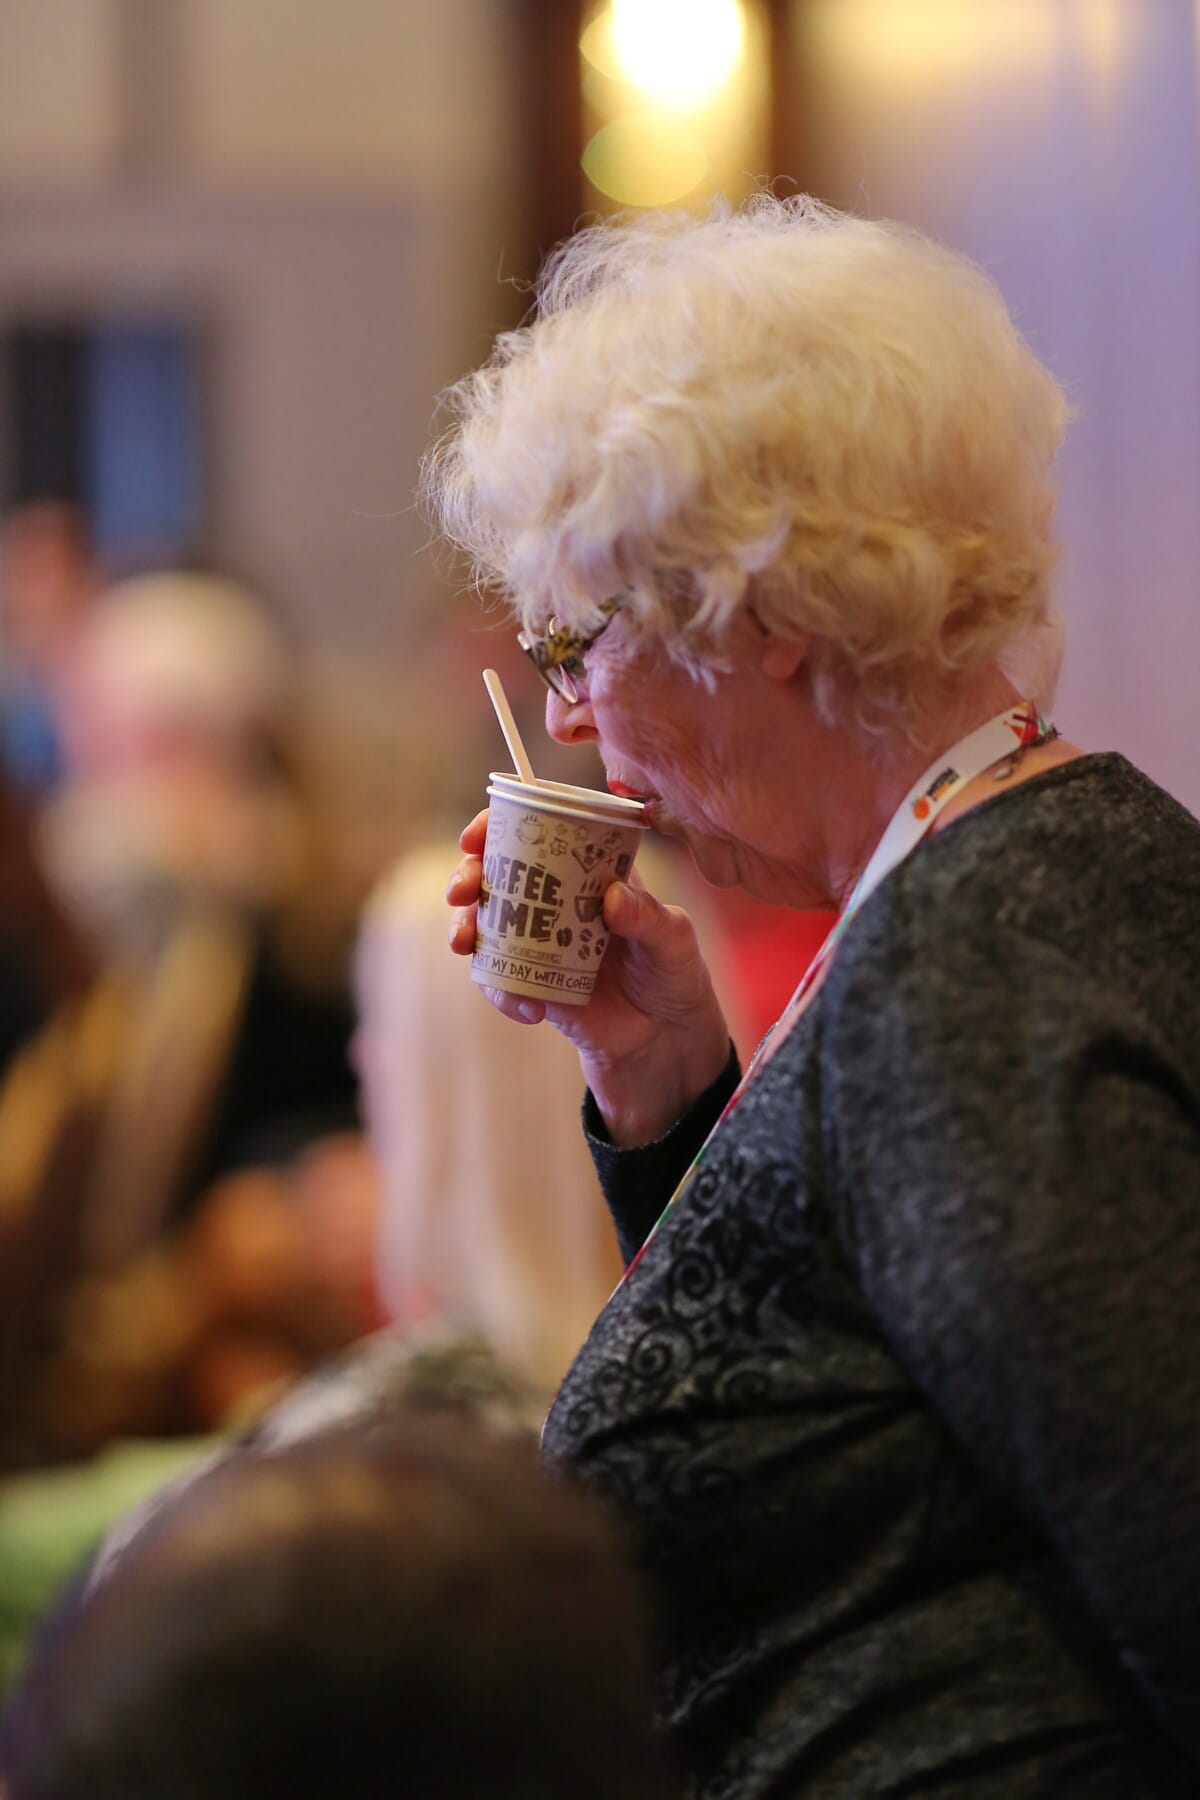 vieille femme, Grand-mère, consommation d'alcool, tasse à café, café, gens, femme, portrait, boisson, à l'intérieur